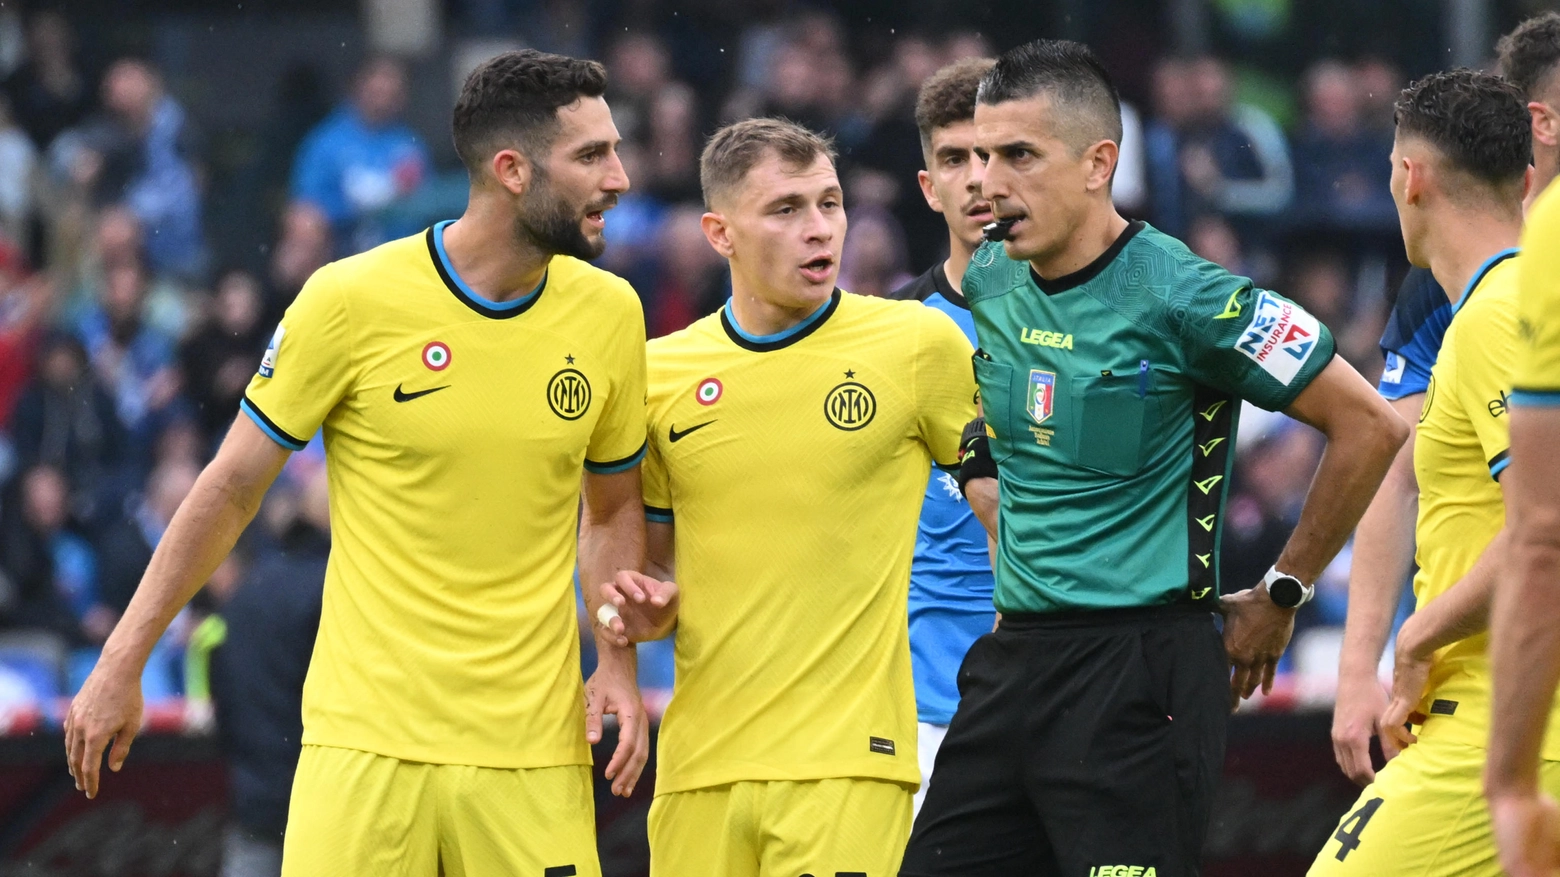 Napoli-Inter 3-1, le pagelle nerazzurre: De Vrij insuperabile, Gagliardini imperdonabile